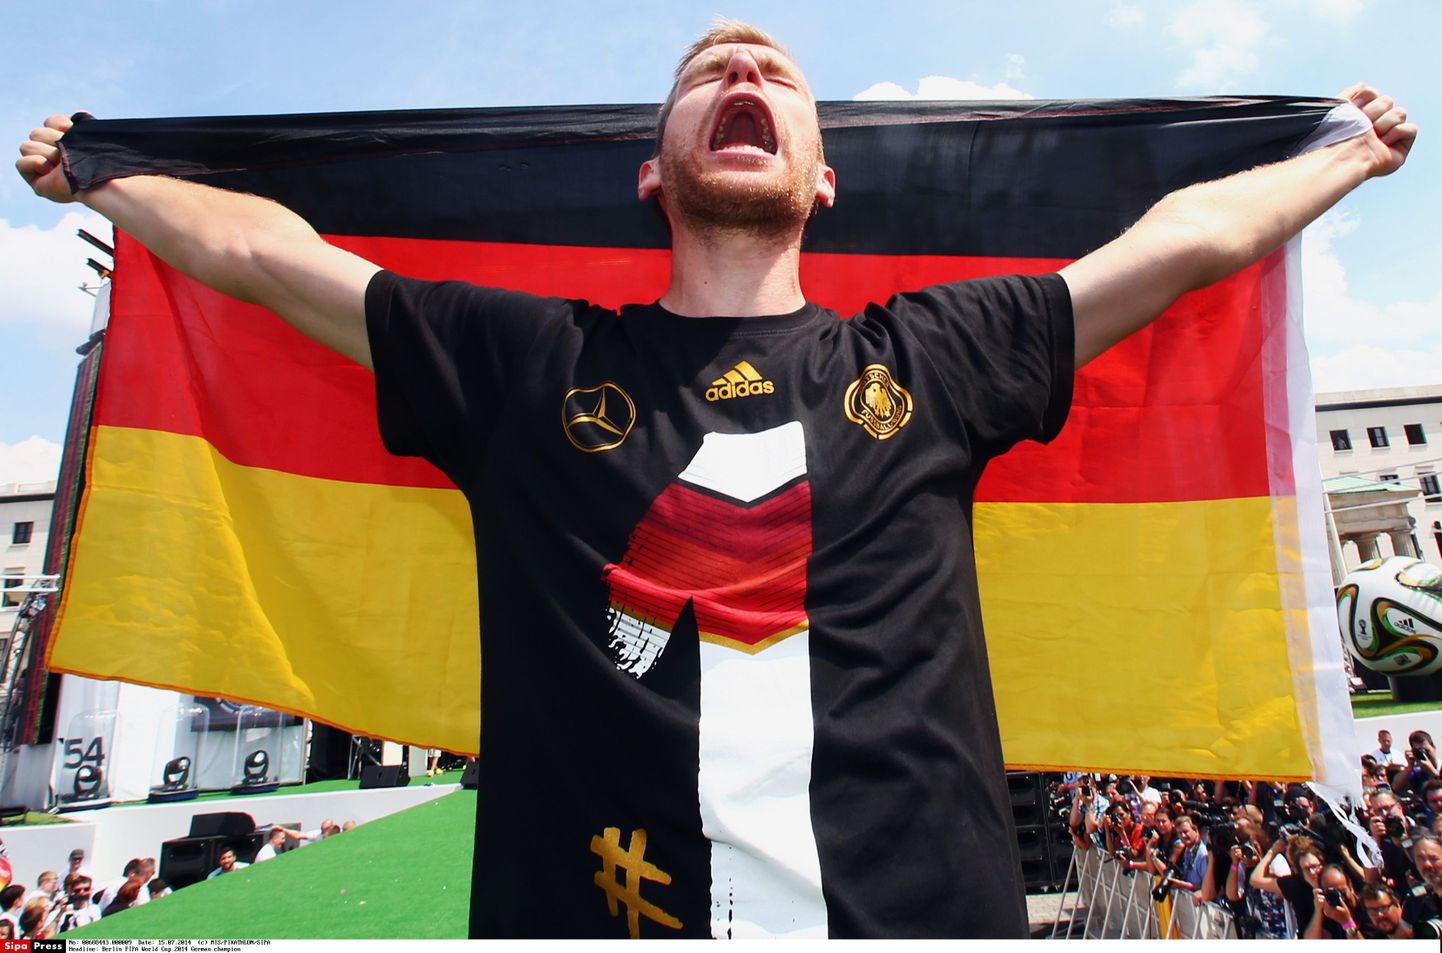 Saksa jalgpalli meeskonna liige koondise särgis.